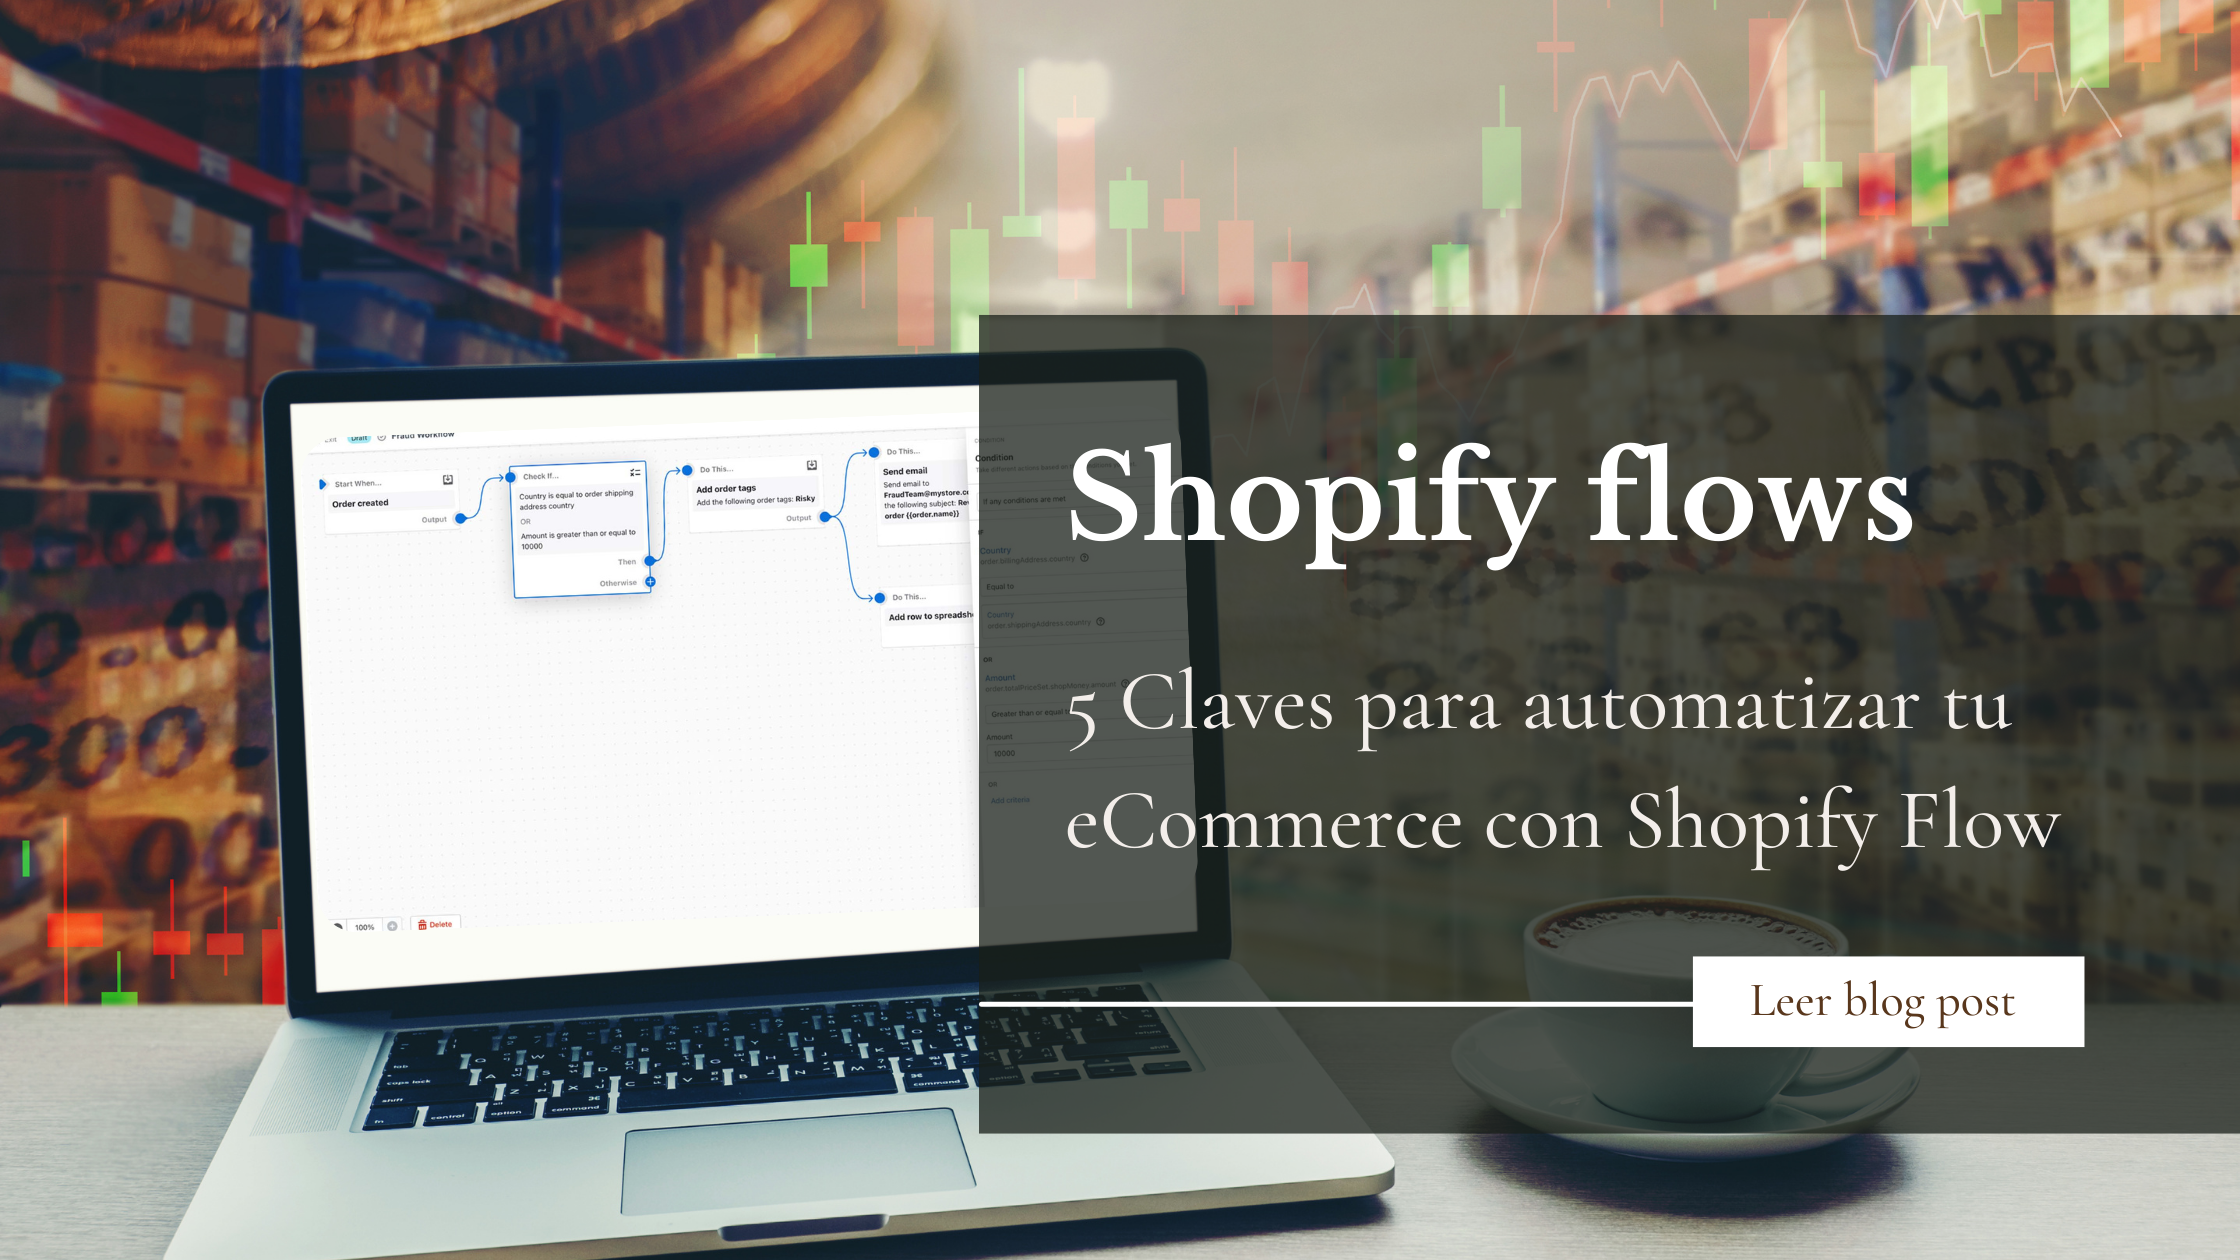 5 Claves para automatizar tu eCommerce con Shopify Plus Flow